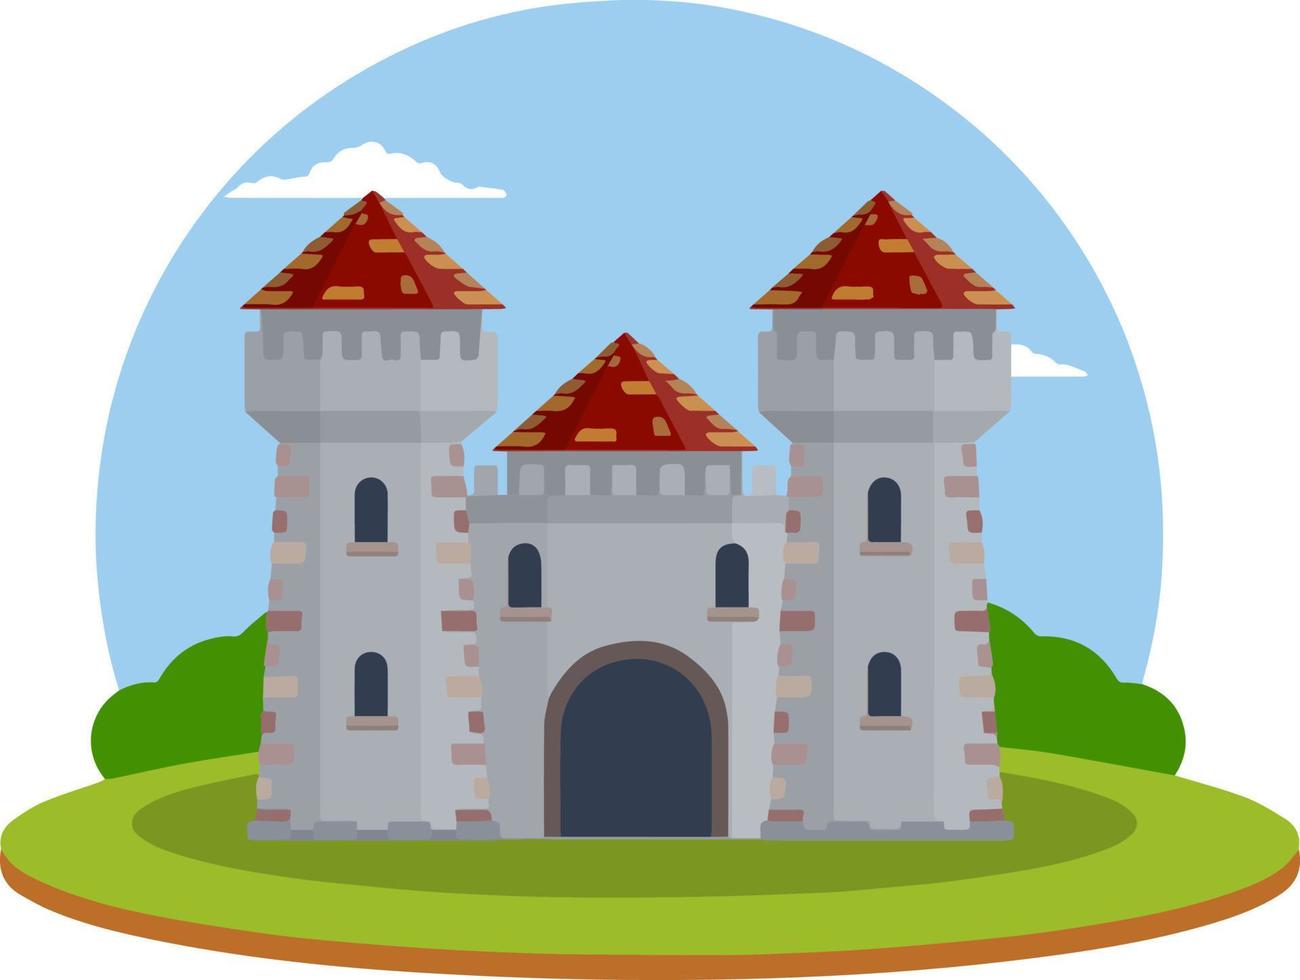 castillo con torres y murallas. construcción de defensa. arquitectura europea medieval. hogar de caballero y rey. protección y seguridad. icono plano para aplicación y juego vector